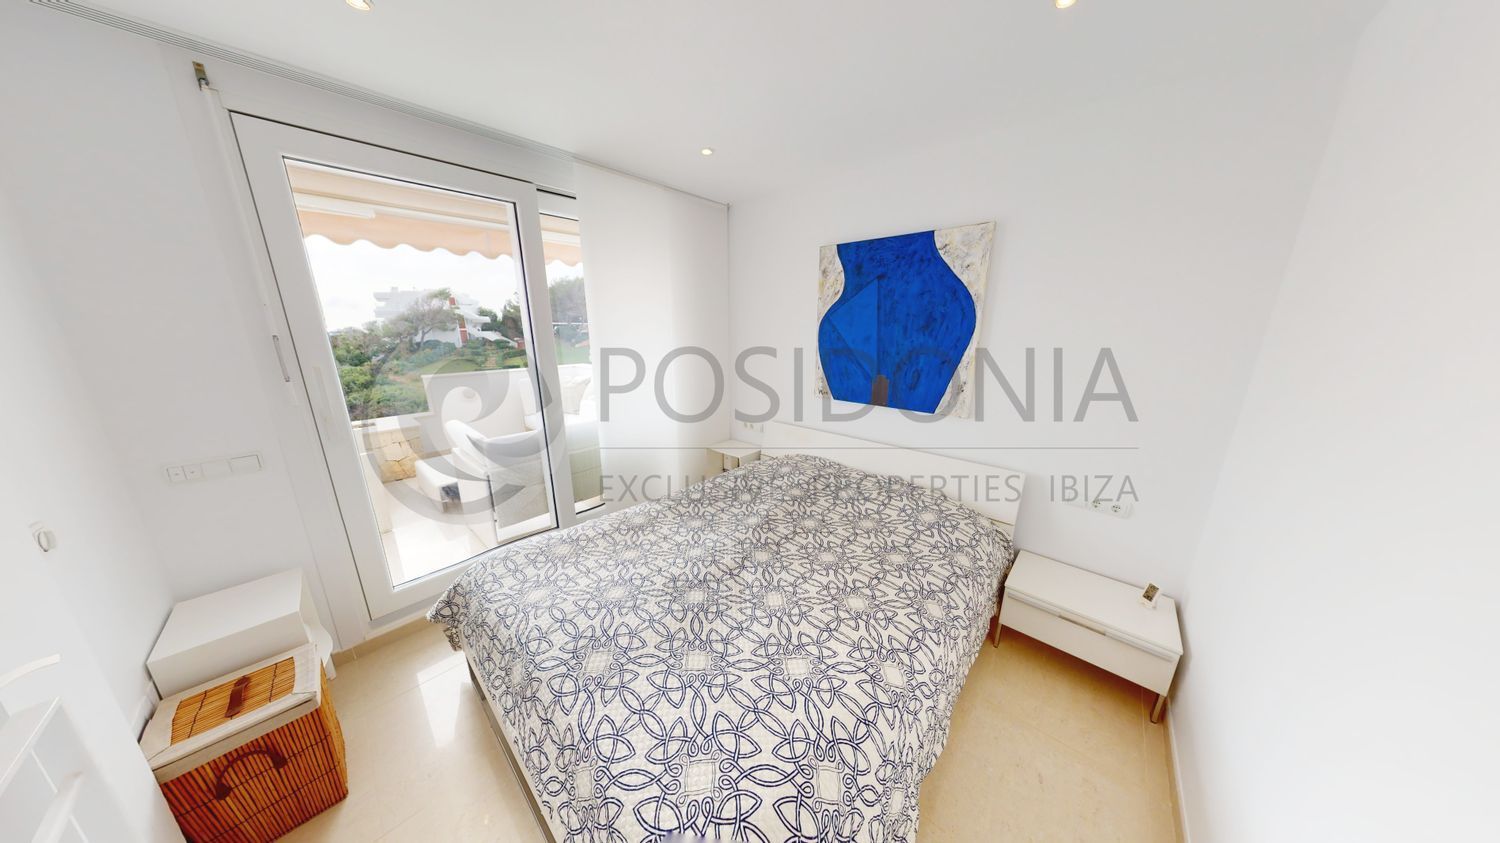 Penthouse à vendre en bord de mer à Santa Eulalia del Río, à Ibiza